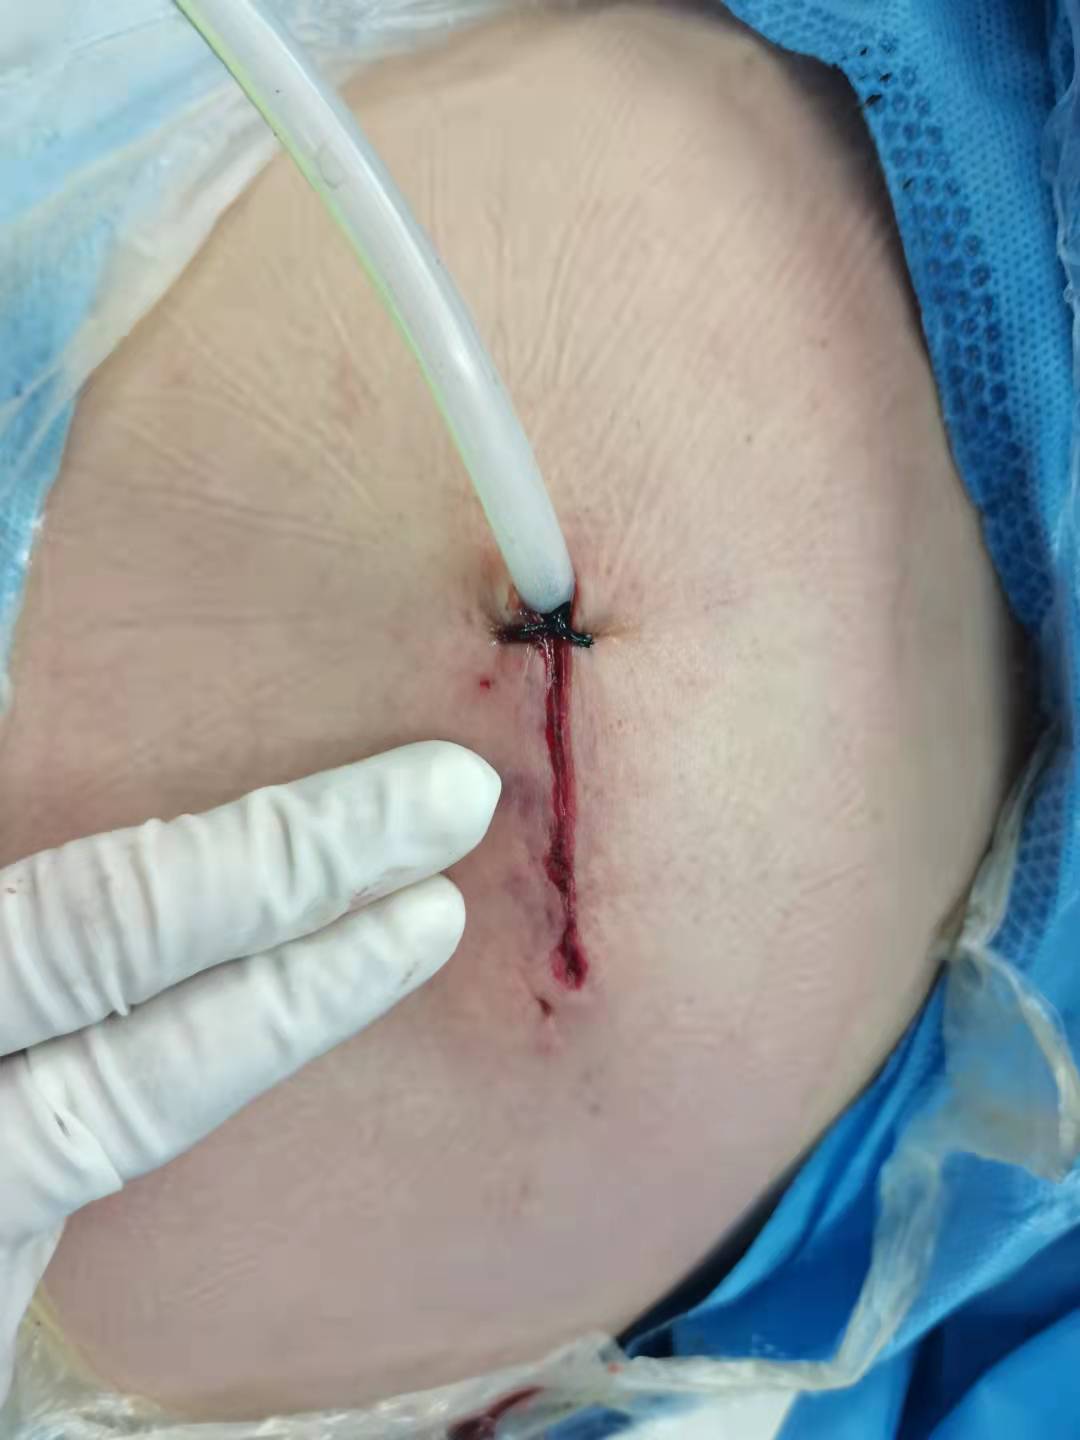 今日经单孔胸腔镜(uvats)行右后纵隔肿瘤切除,手术过程顺利,手术切口